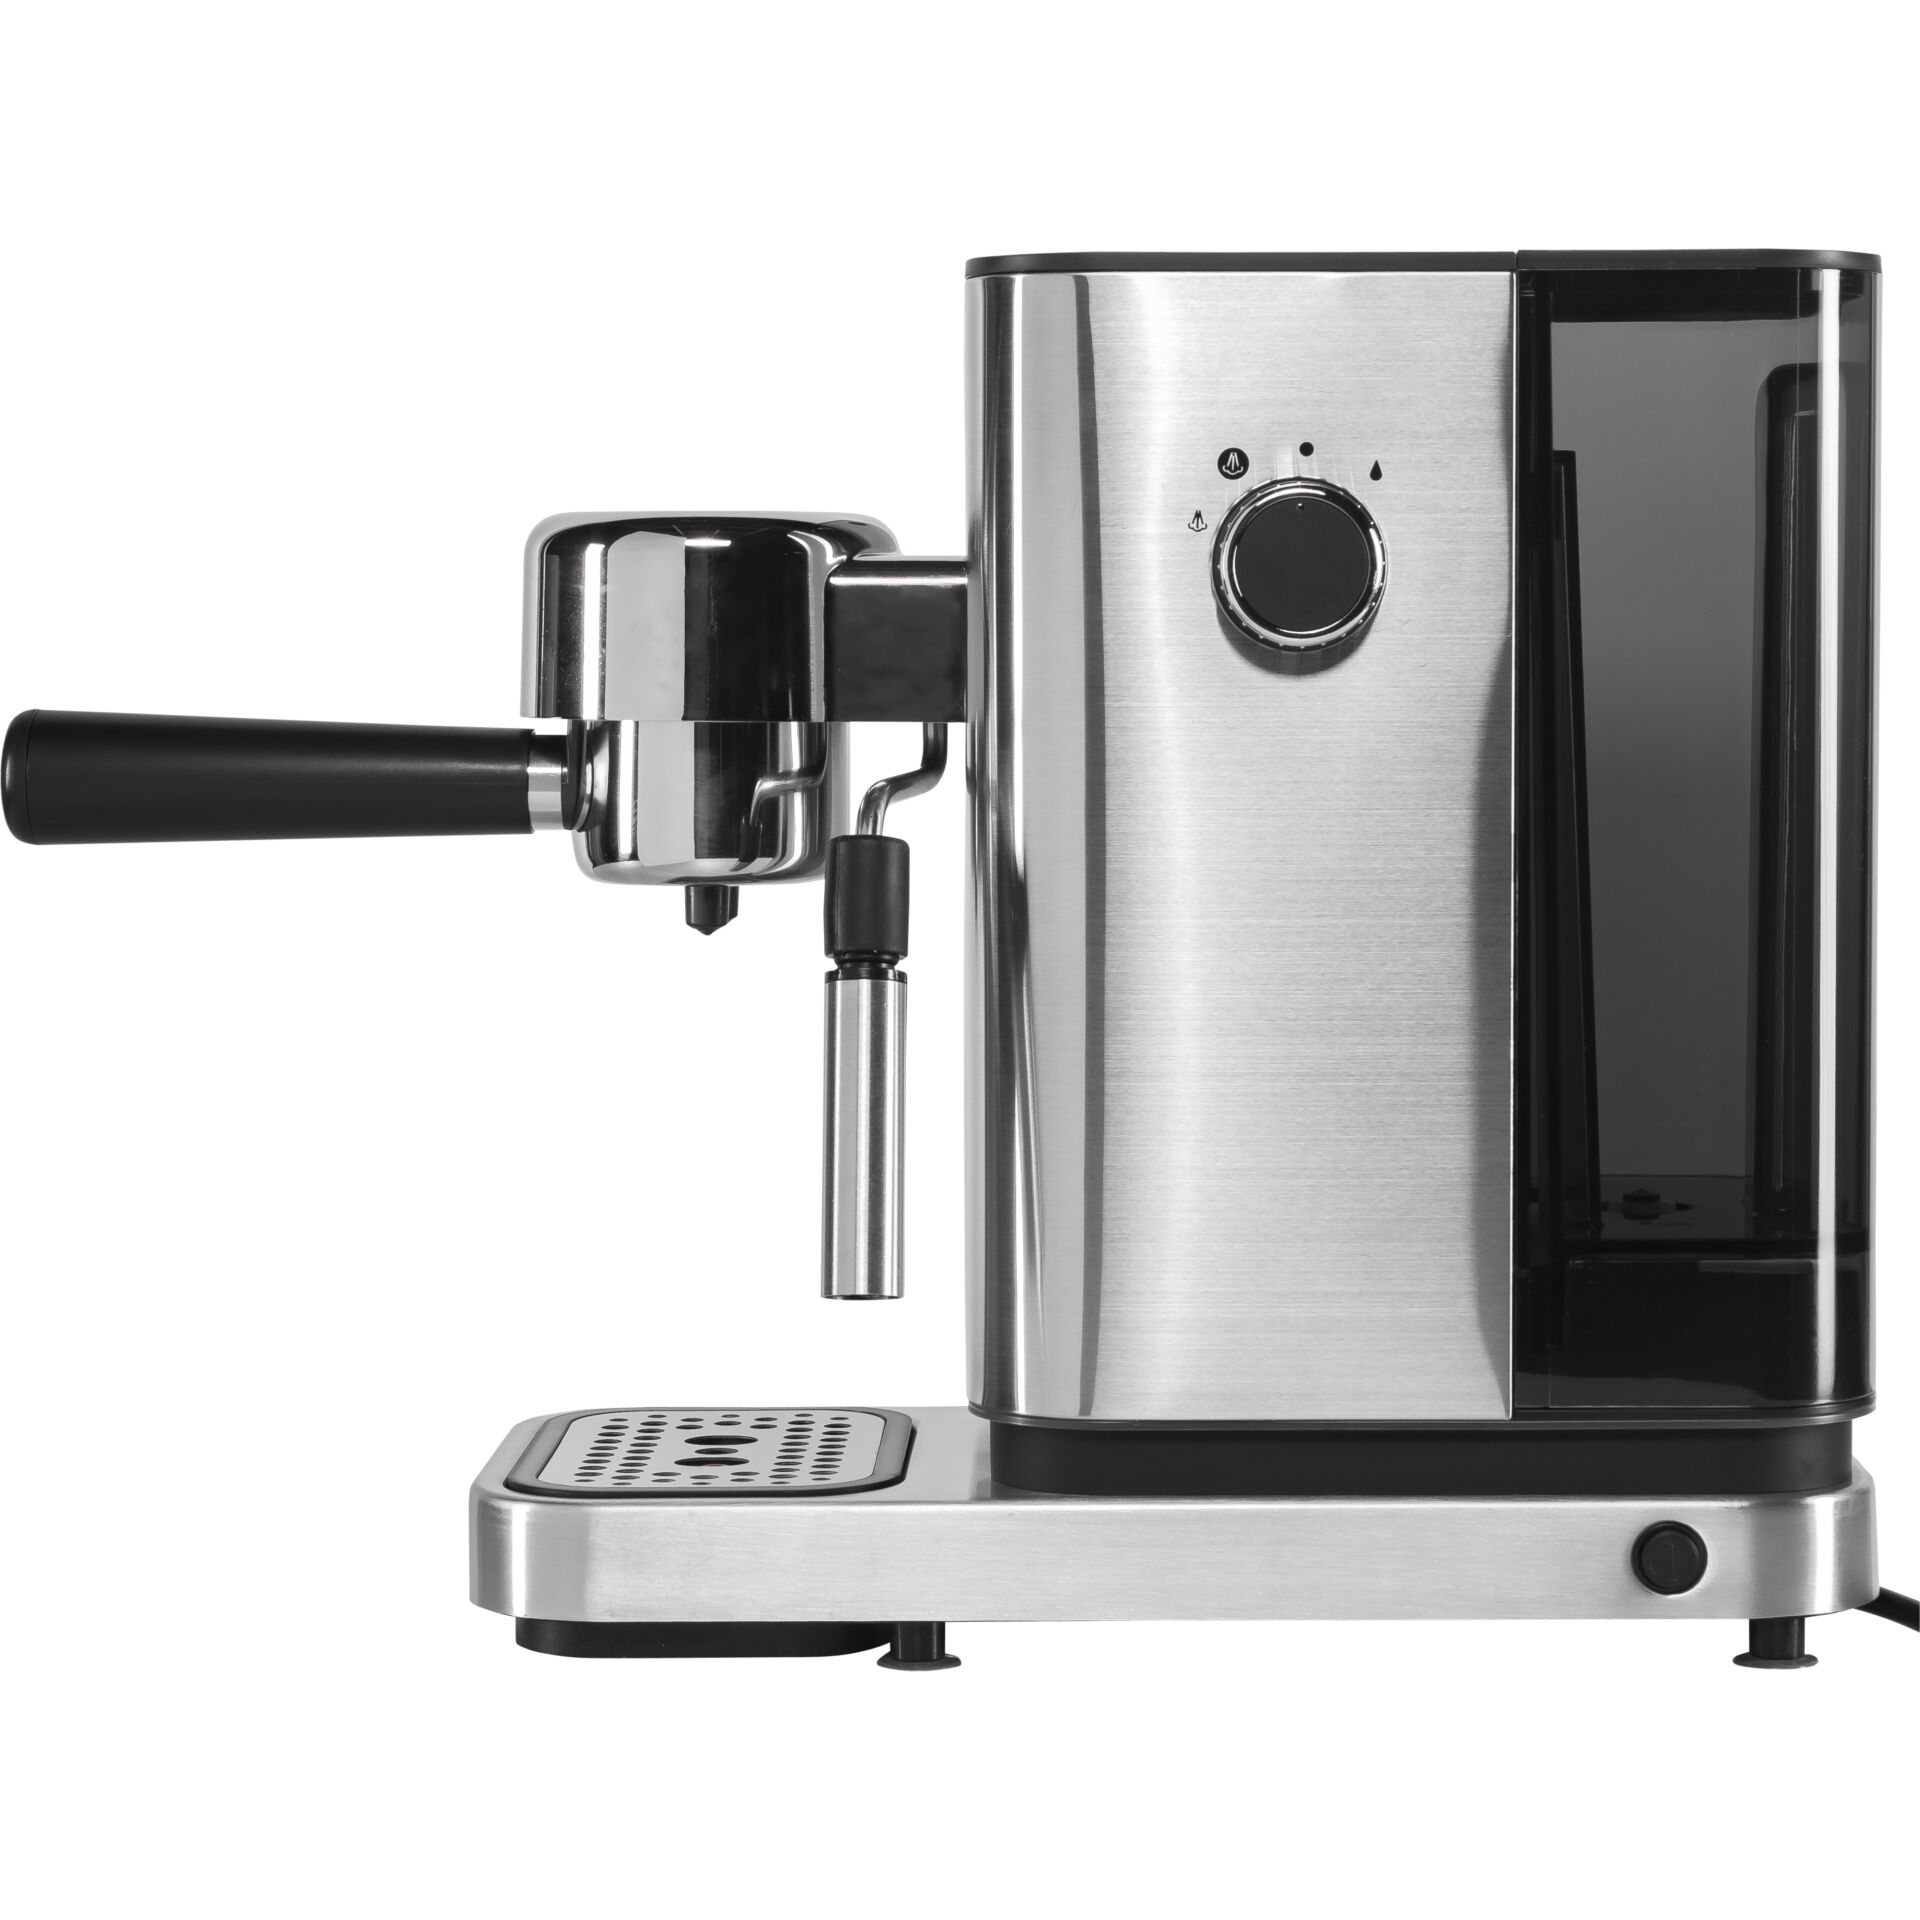 Cafetera espresso Lumero WMF  Coffee type, Espresso, Espresso machine